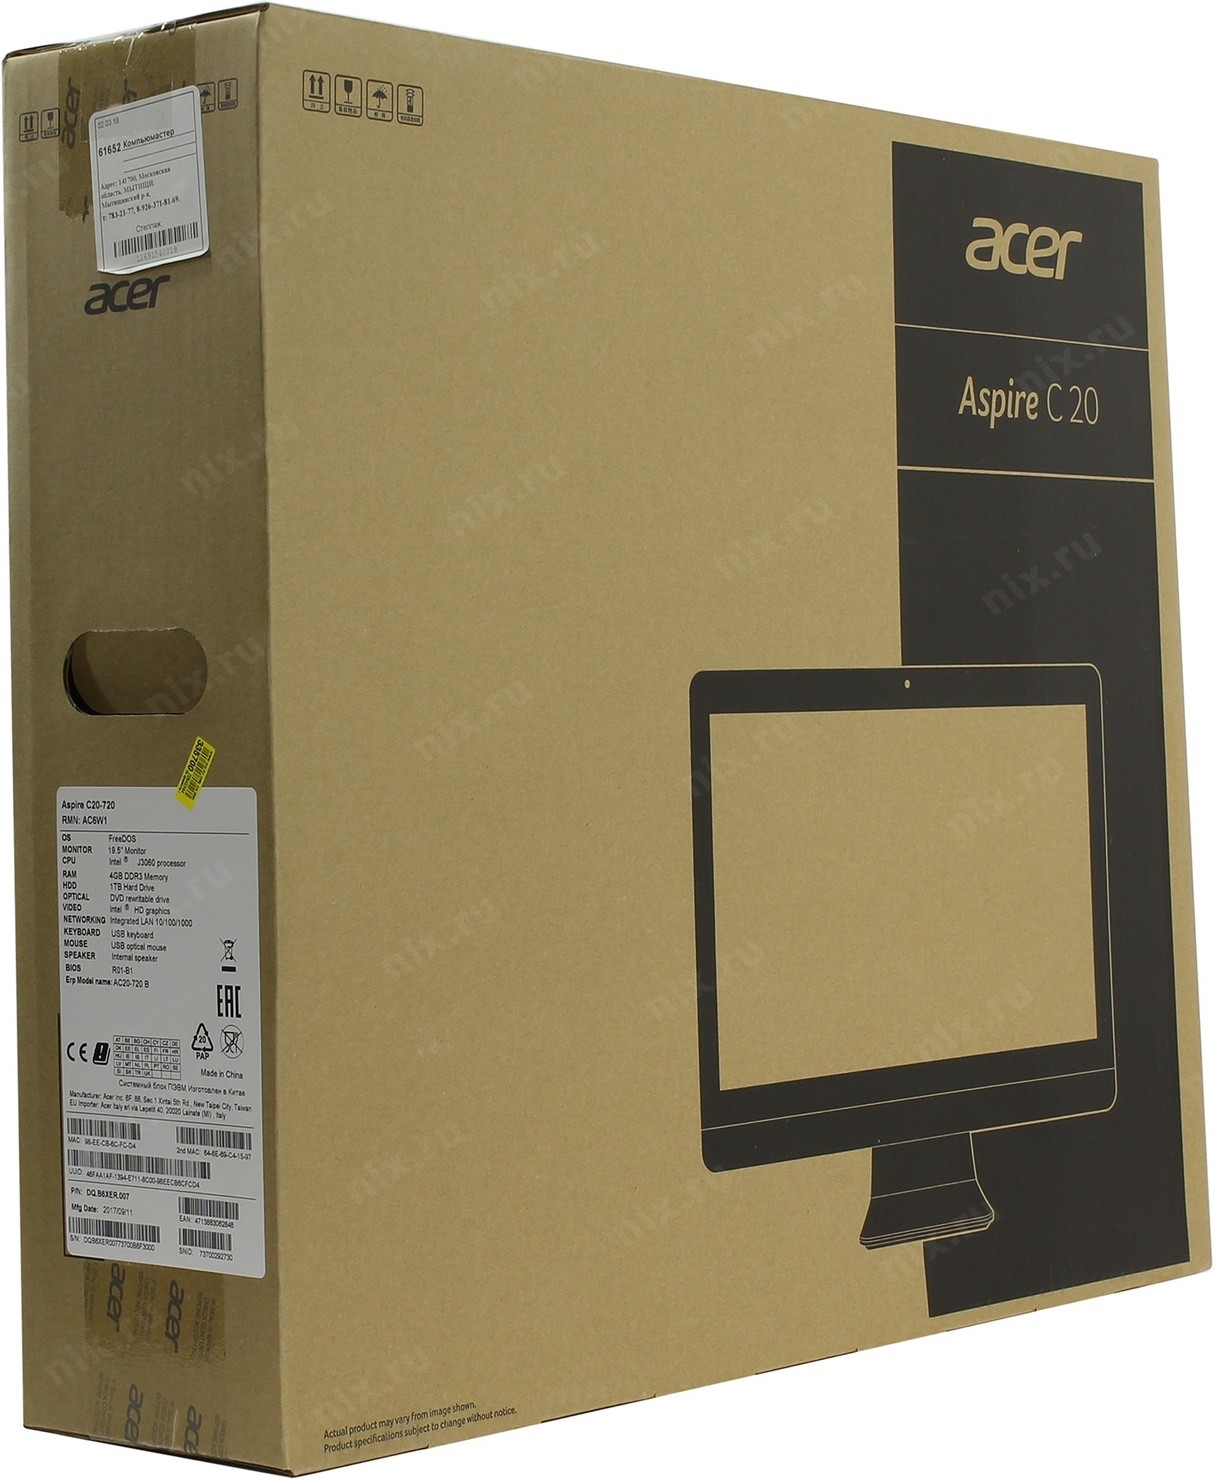 Aspire c20. Acer Aspire c20-720. Aspire c20-720. Aspire c20-220. Acer Aspire c20-720 характеристики.